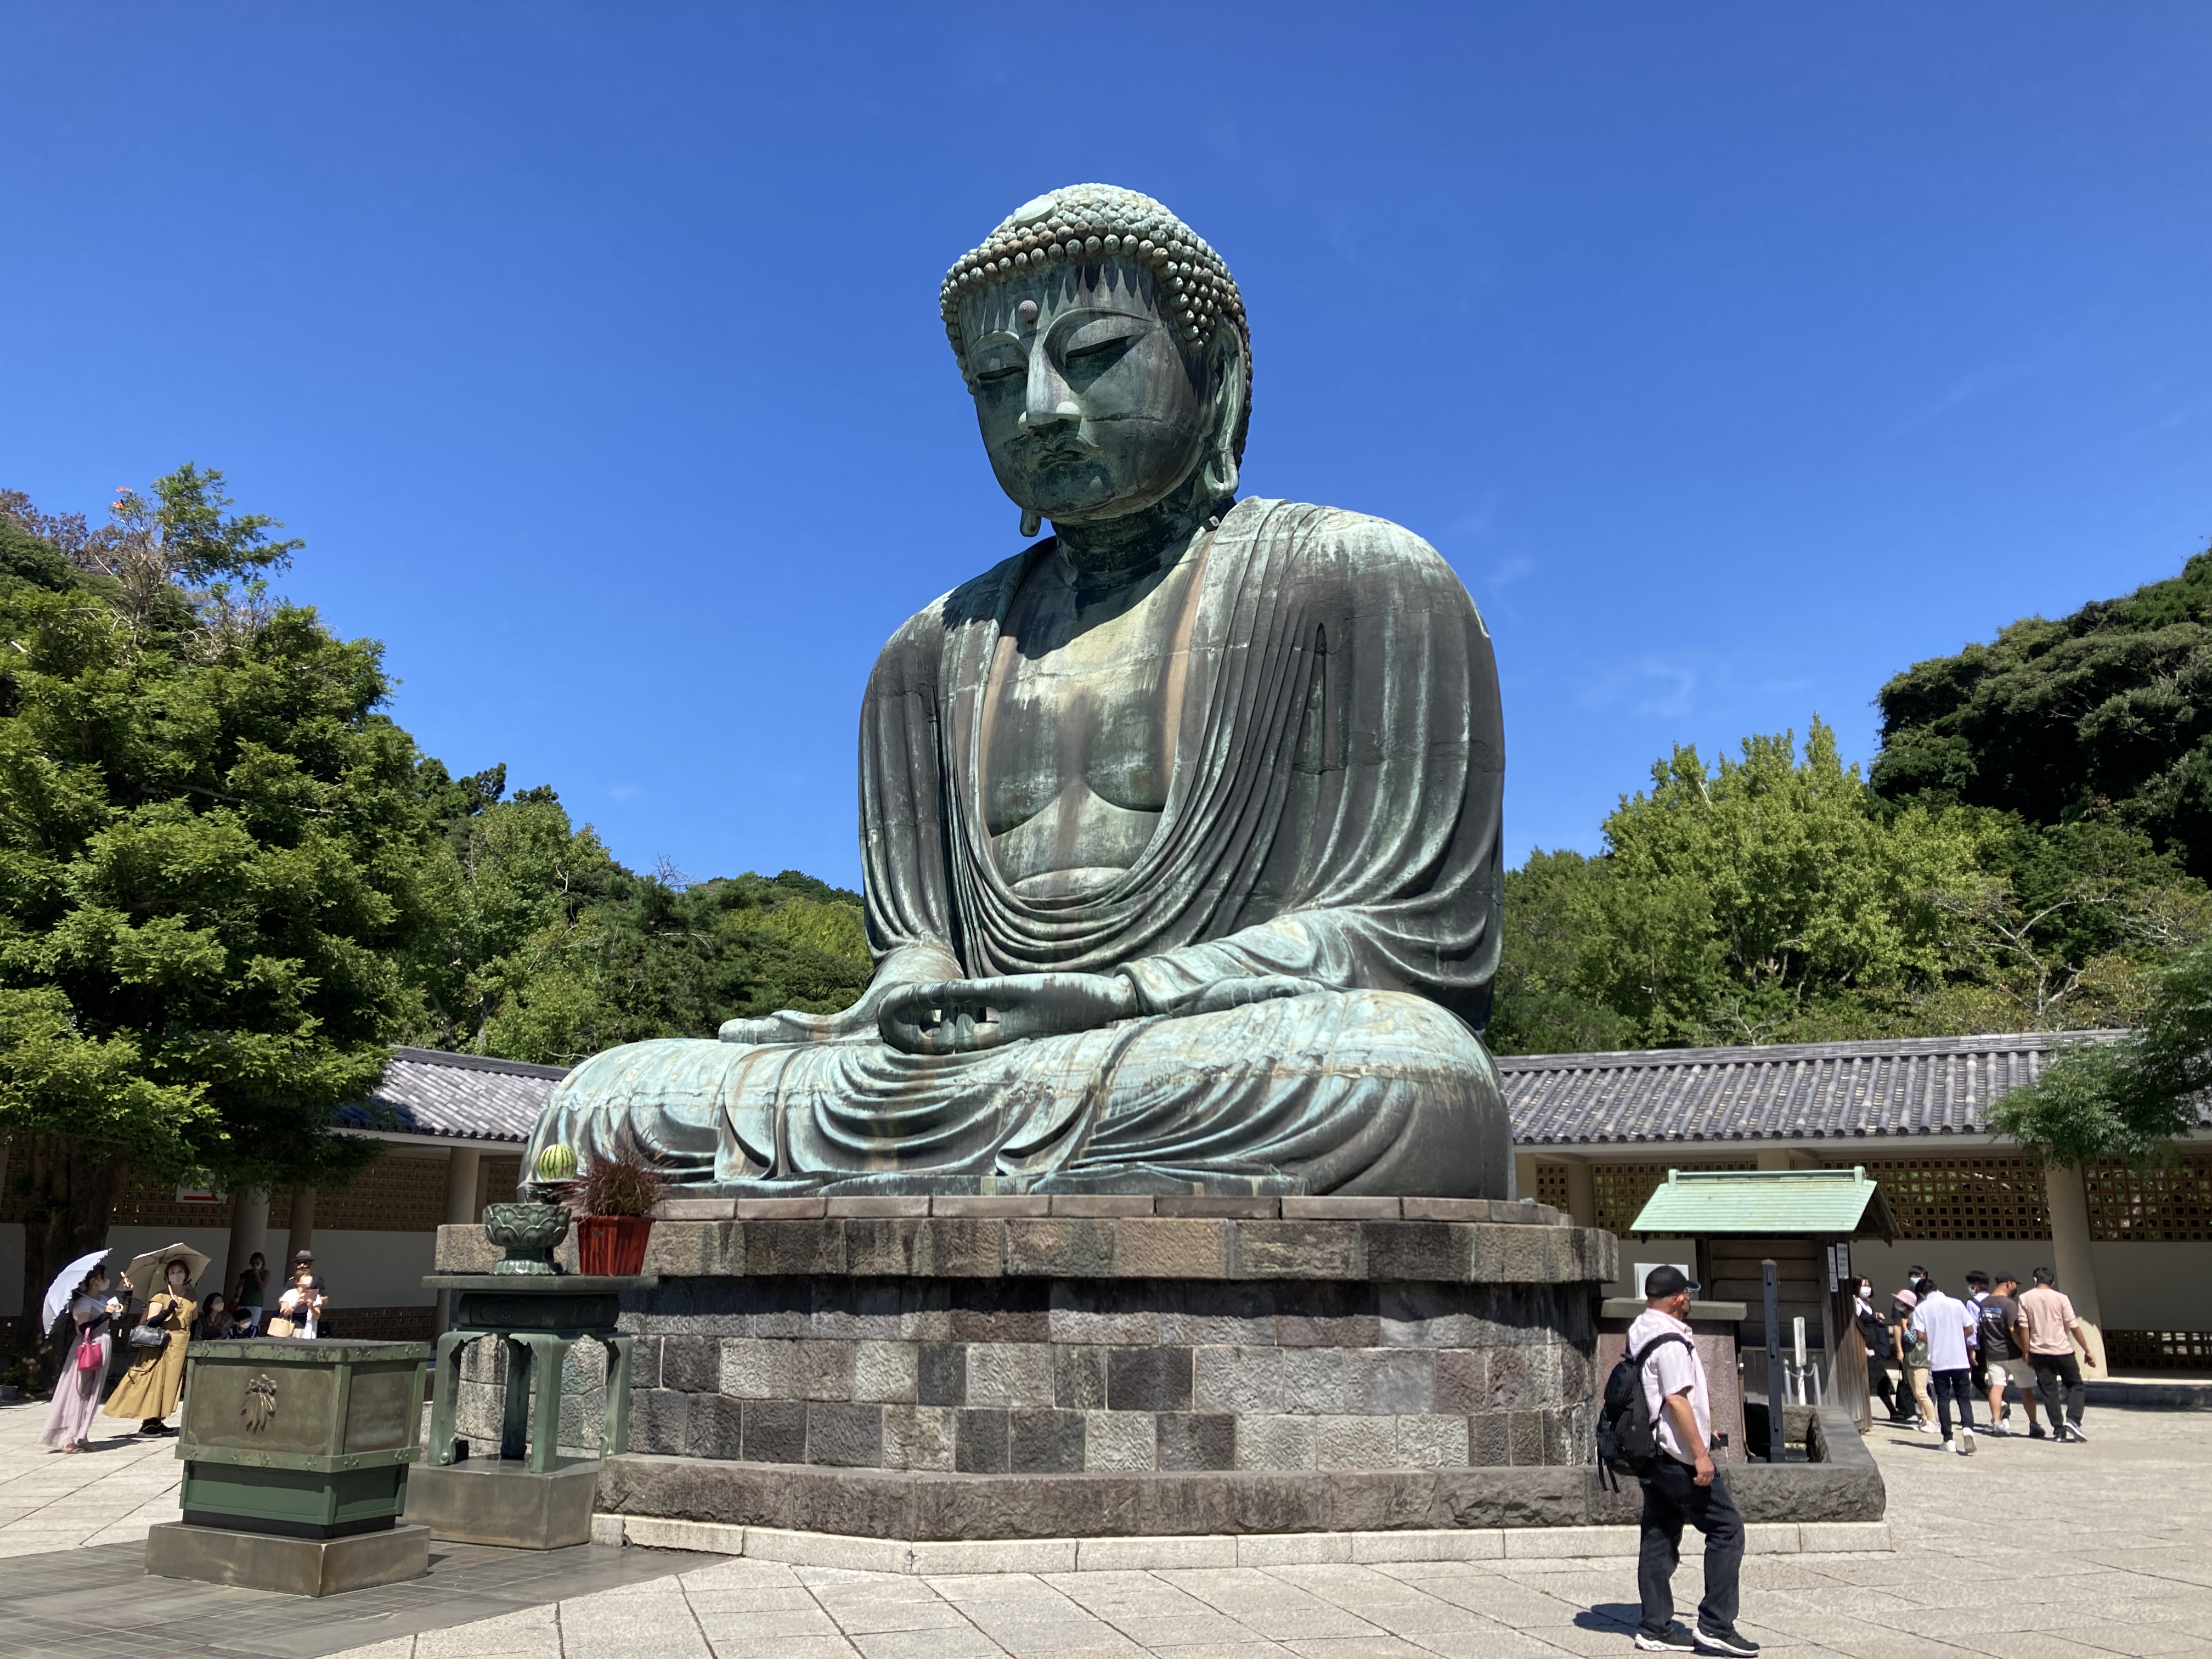 The big Buddha at Kotokuin